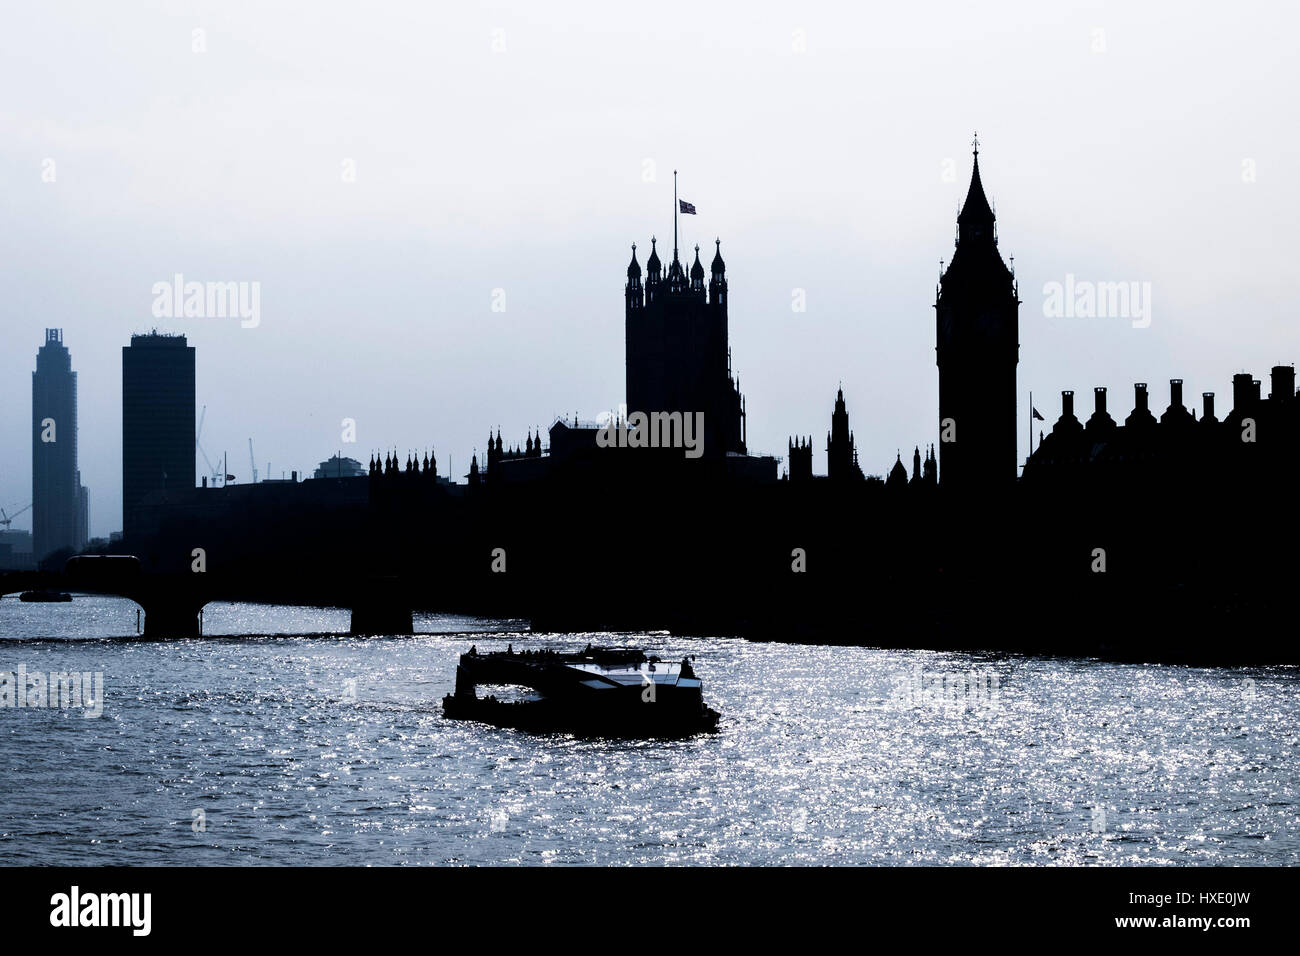 Le Parlement de Westminster London Skyline Silhouette célèbre Big Ben Tamise Haze ciel voilé Banque D'Images